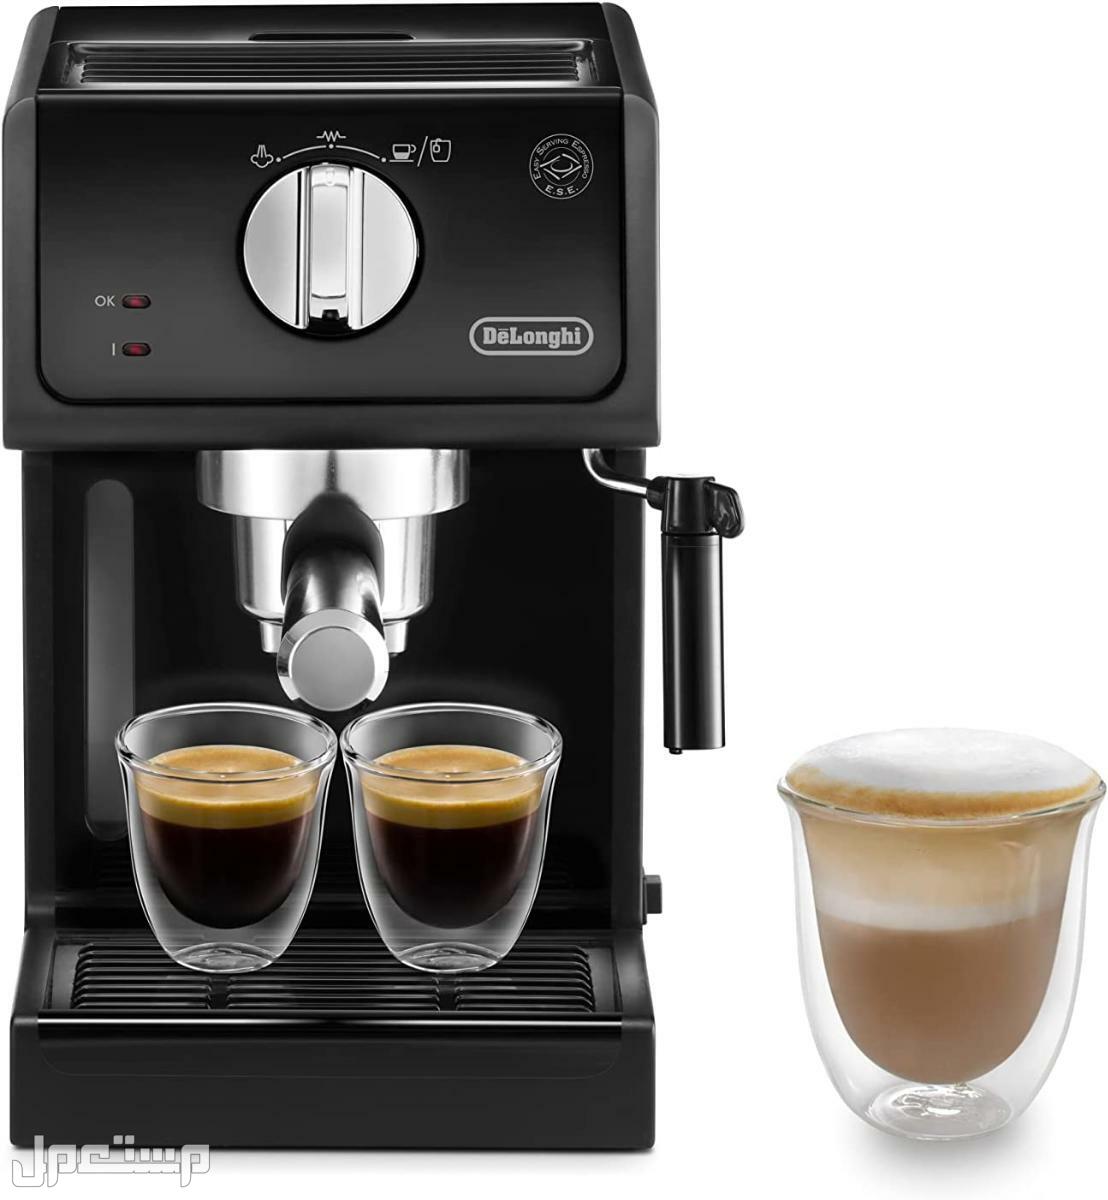 عيوب ومميزات ومواصفات وسعر ماكينة قهوة ديلونجى ديديكا في ليبيا لماذا عليك شراء ماكينة قهوة ديلونجي ديديكا ؟